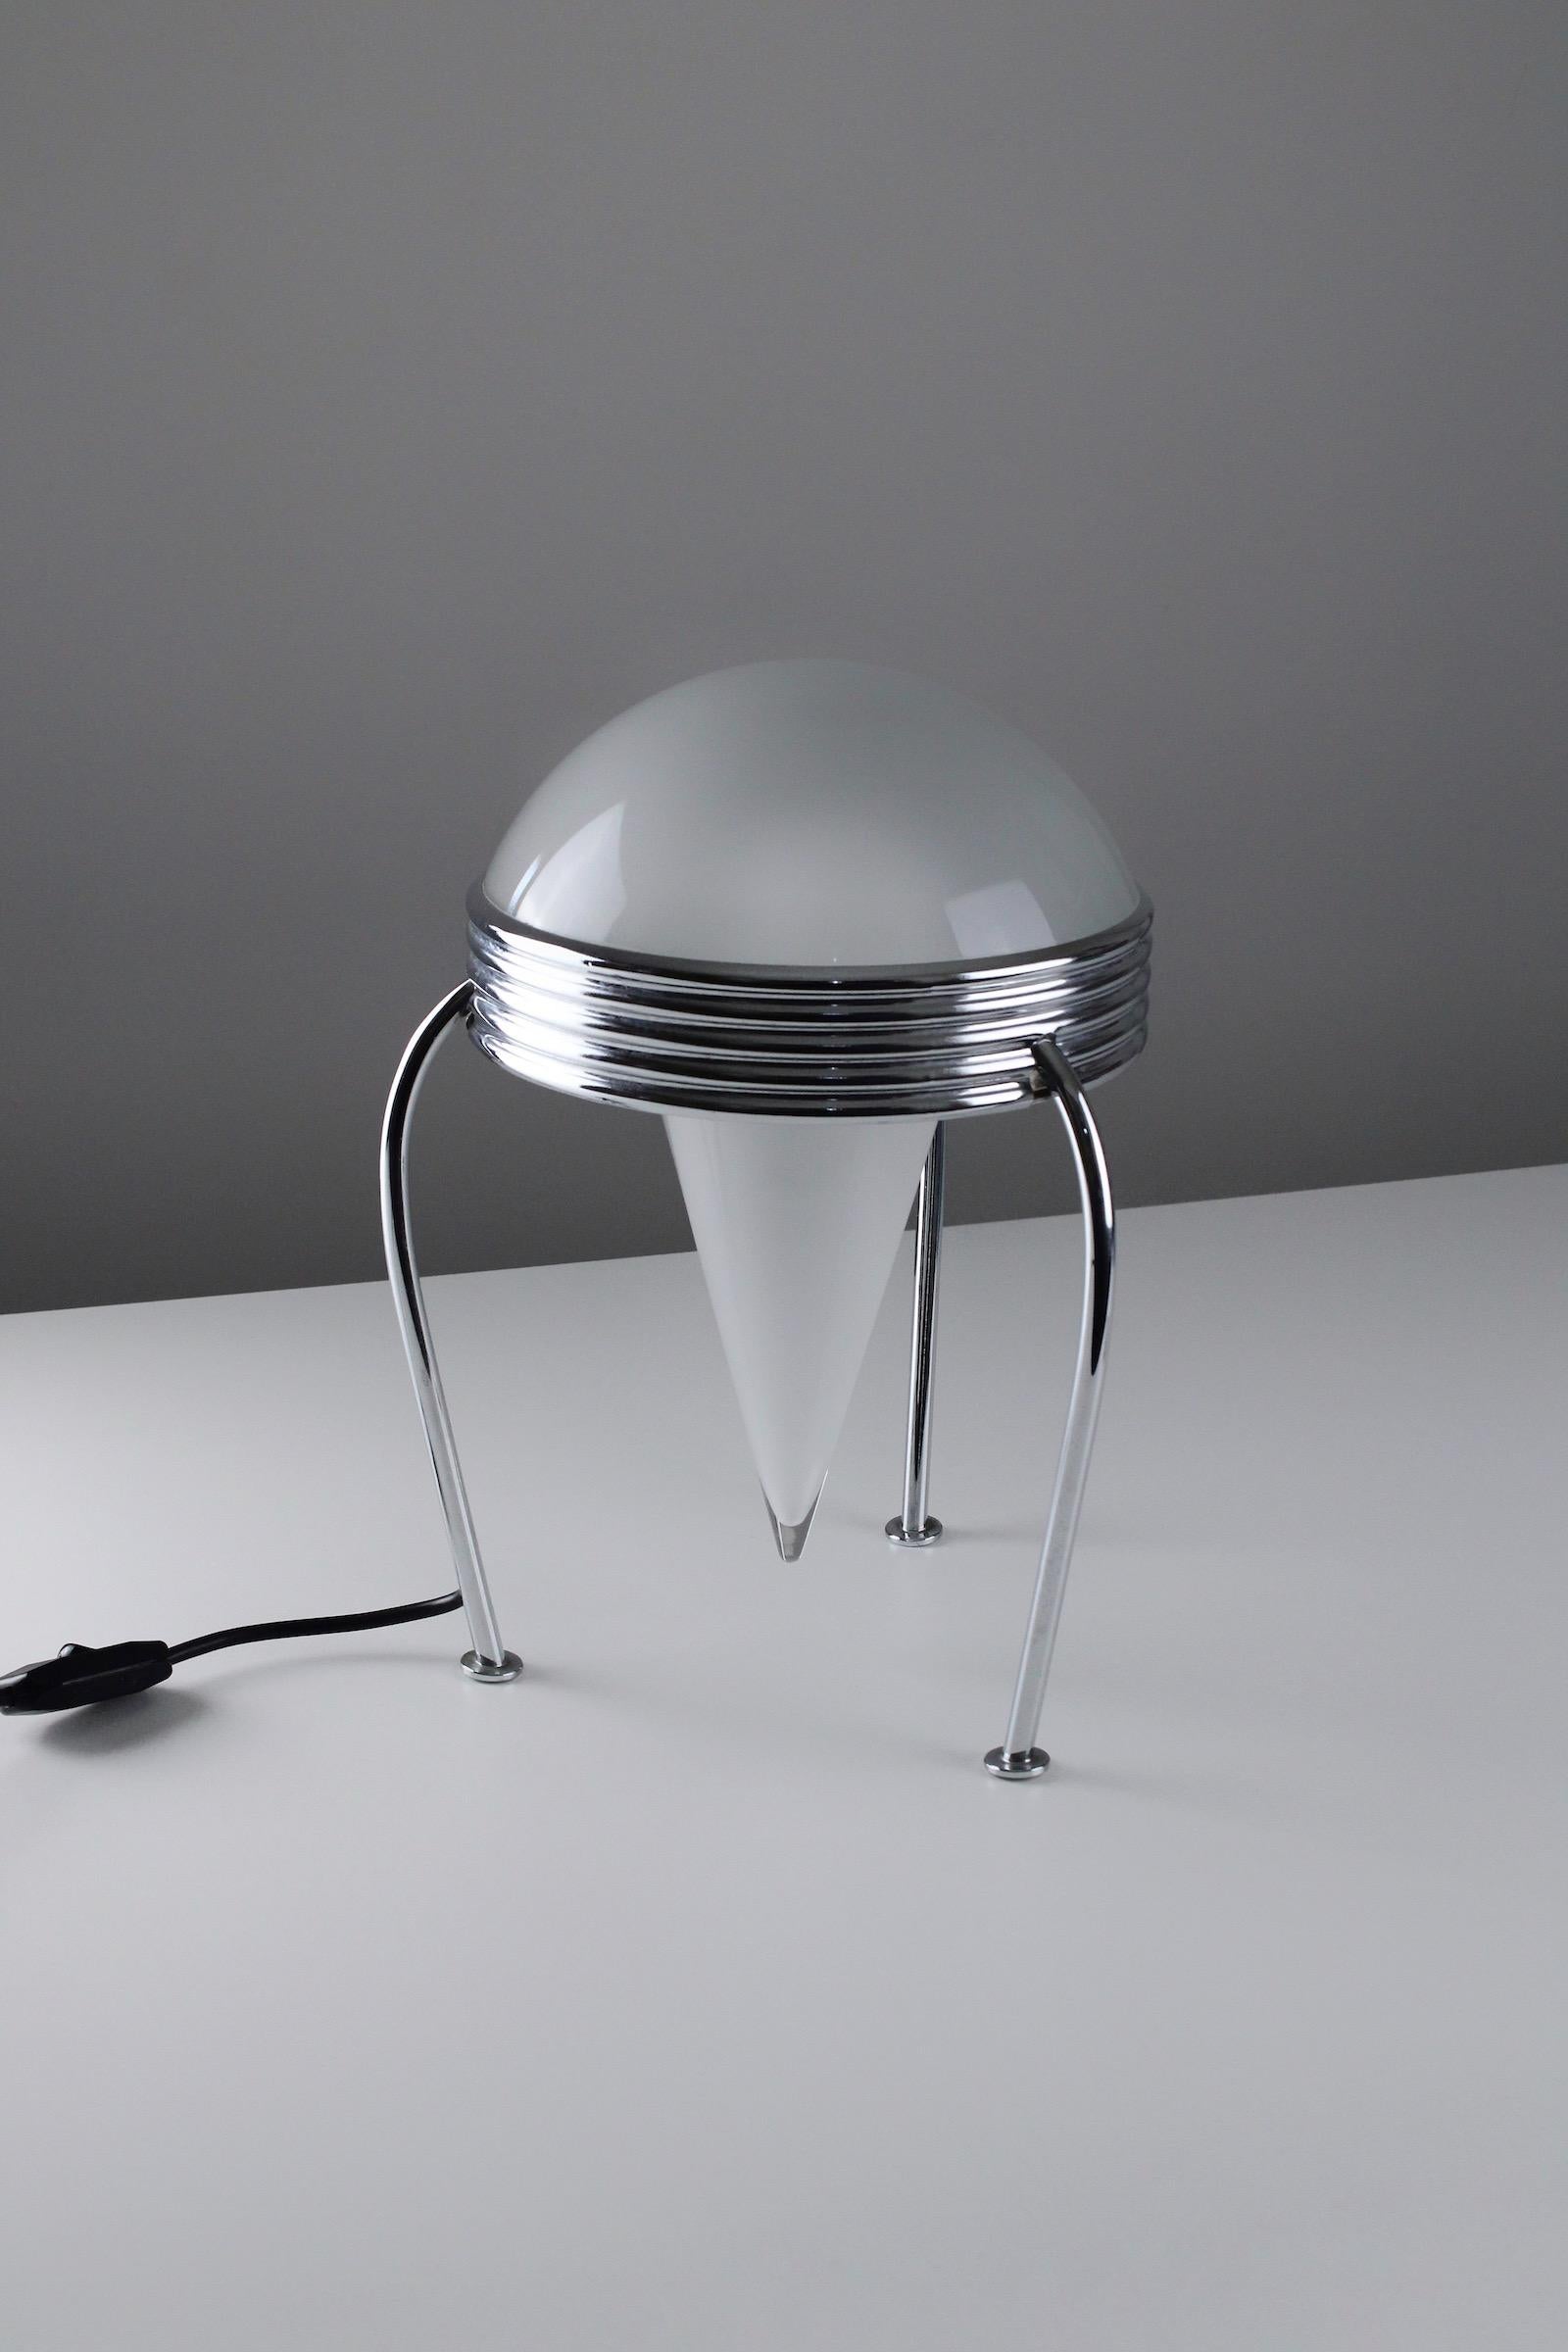 Rare lampe de table modèle Numero Trenta fabriquée par Bieffeplast à Padoue. Conçu par Massimo Iosa Ghini en 1990. Un design impressionnant dans le style de Memphis. Fabriqué en métal chromé et en verre. L'état général est excellent.

Littérature